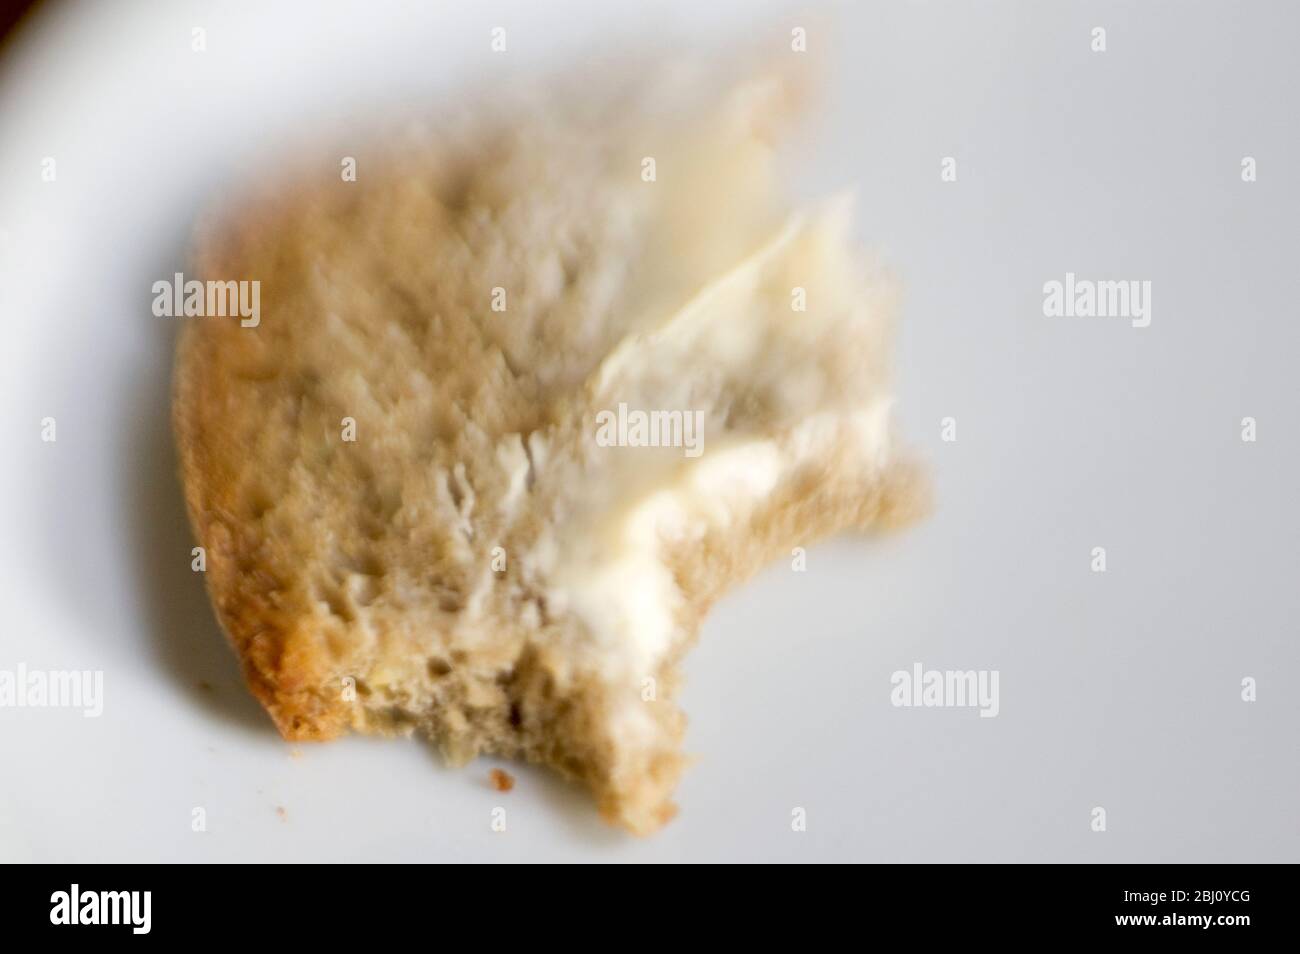 Stück gebuttertes Brot mit Bissen - aufgenommen mit Lenssbaby-Linse für kurze Fokussierung - Stockfoto